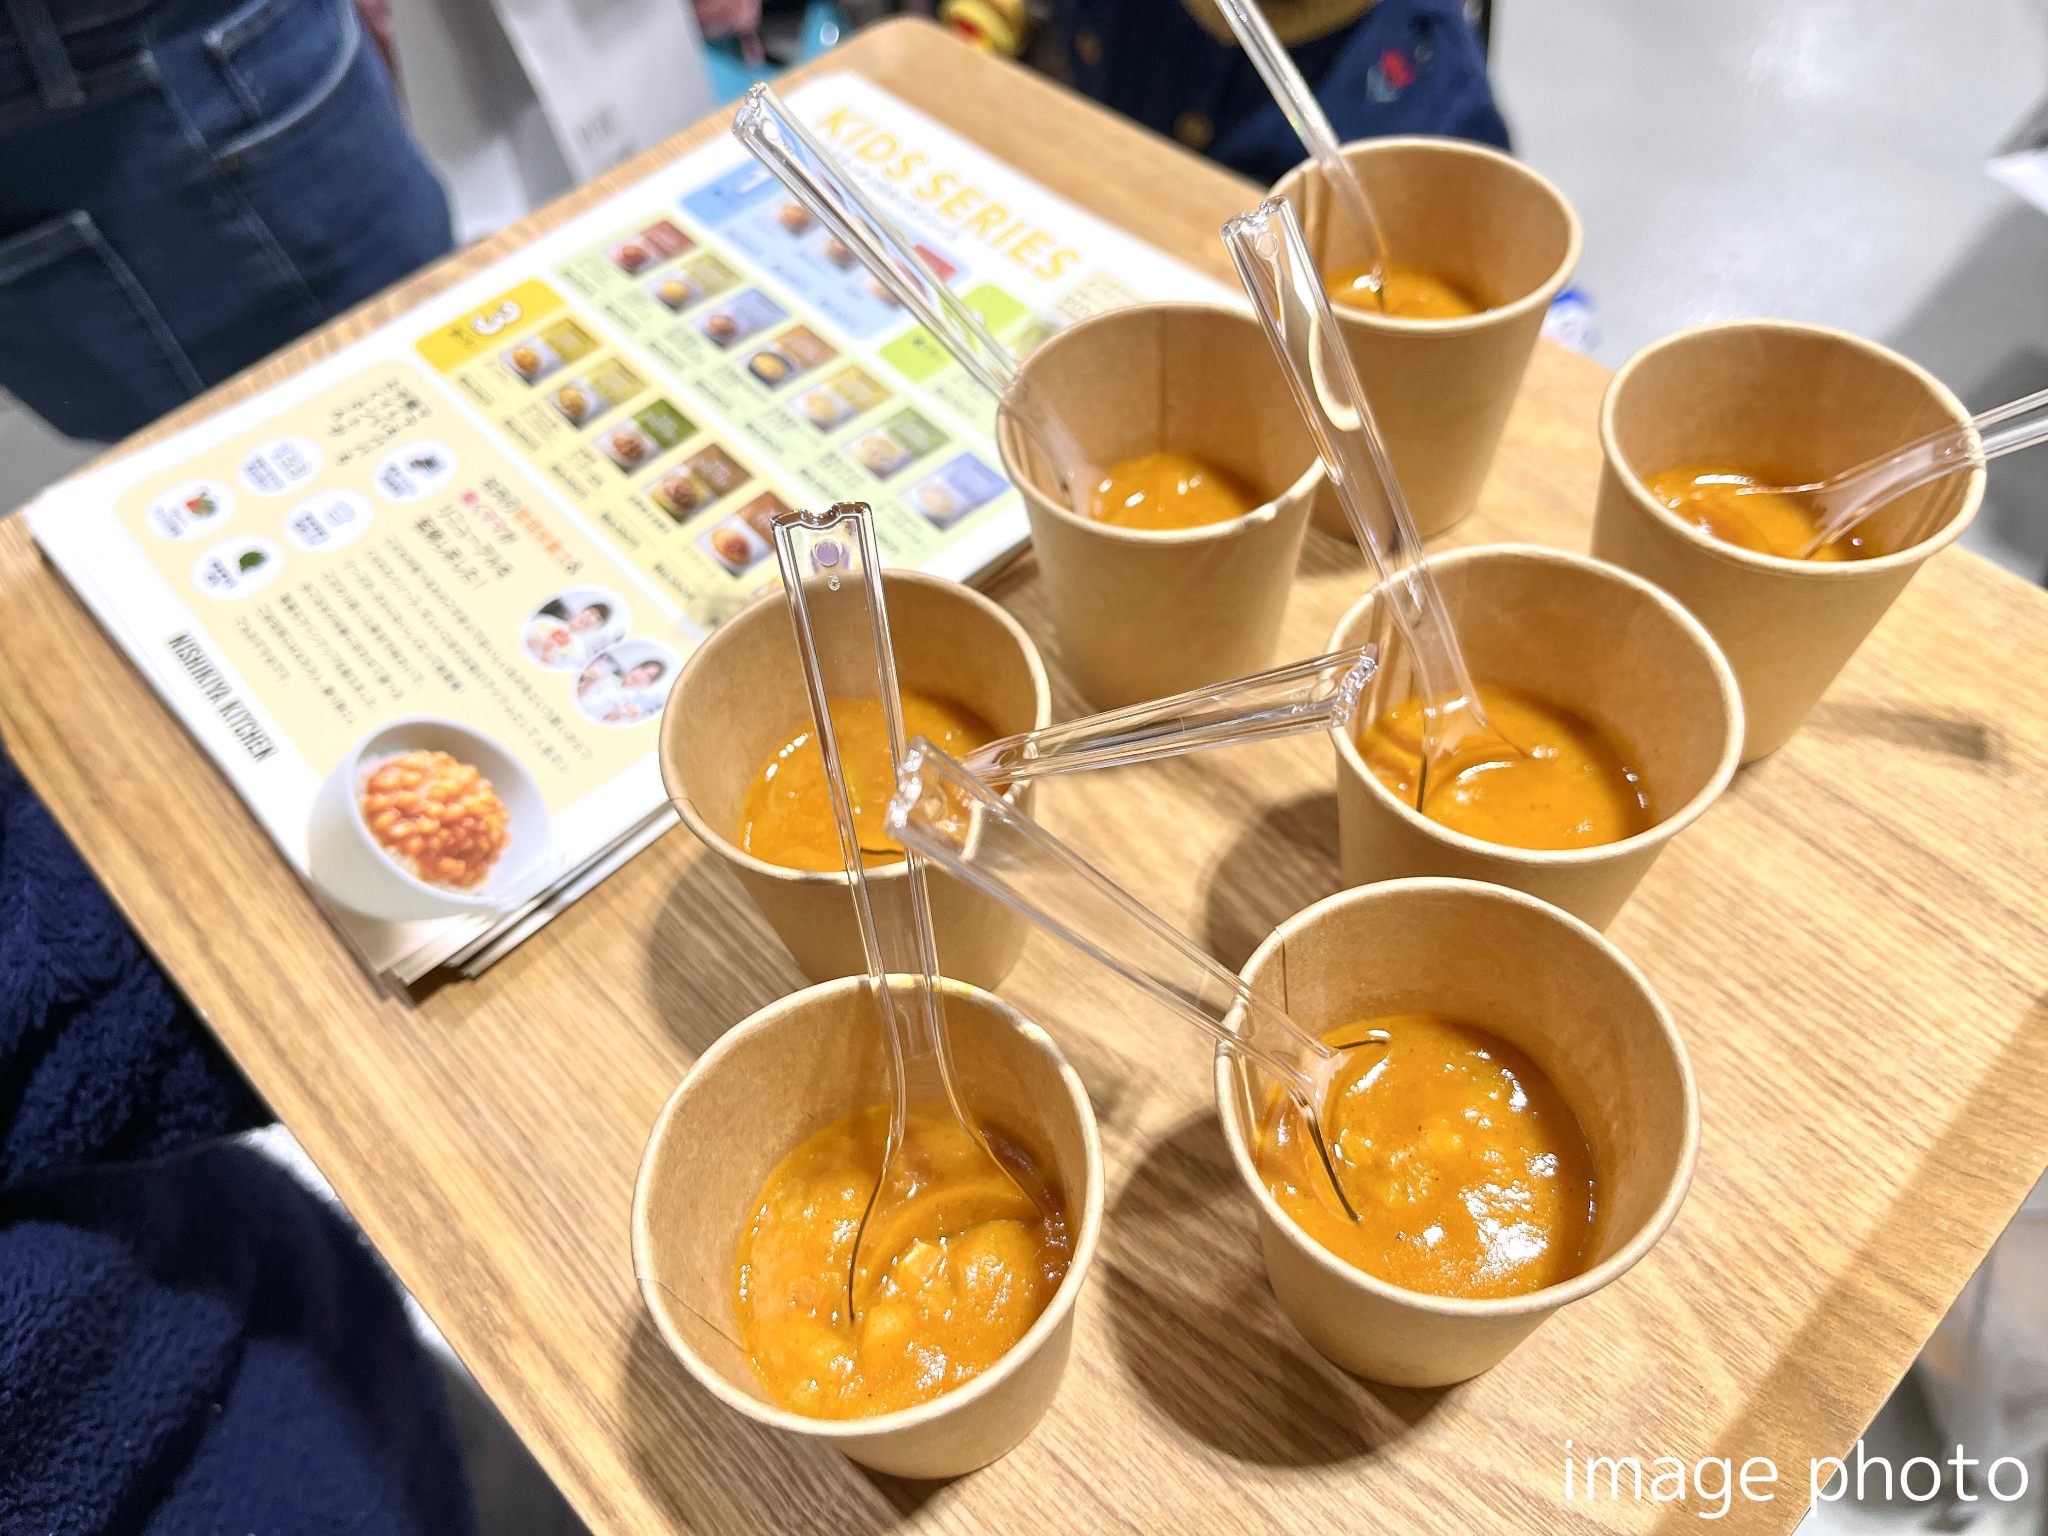 約120種類のレトルト食品を販売するNISHIKIYA KITCHENが7月2日より15日限定で浦和PARCOへ初出店